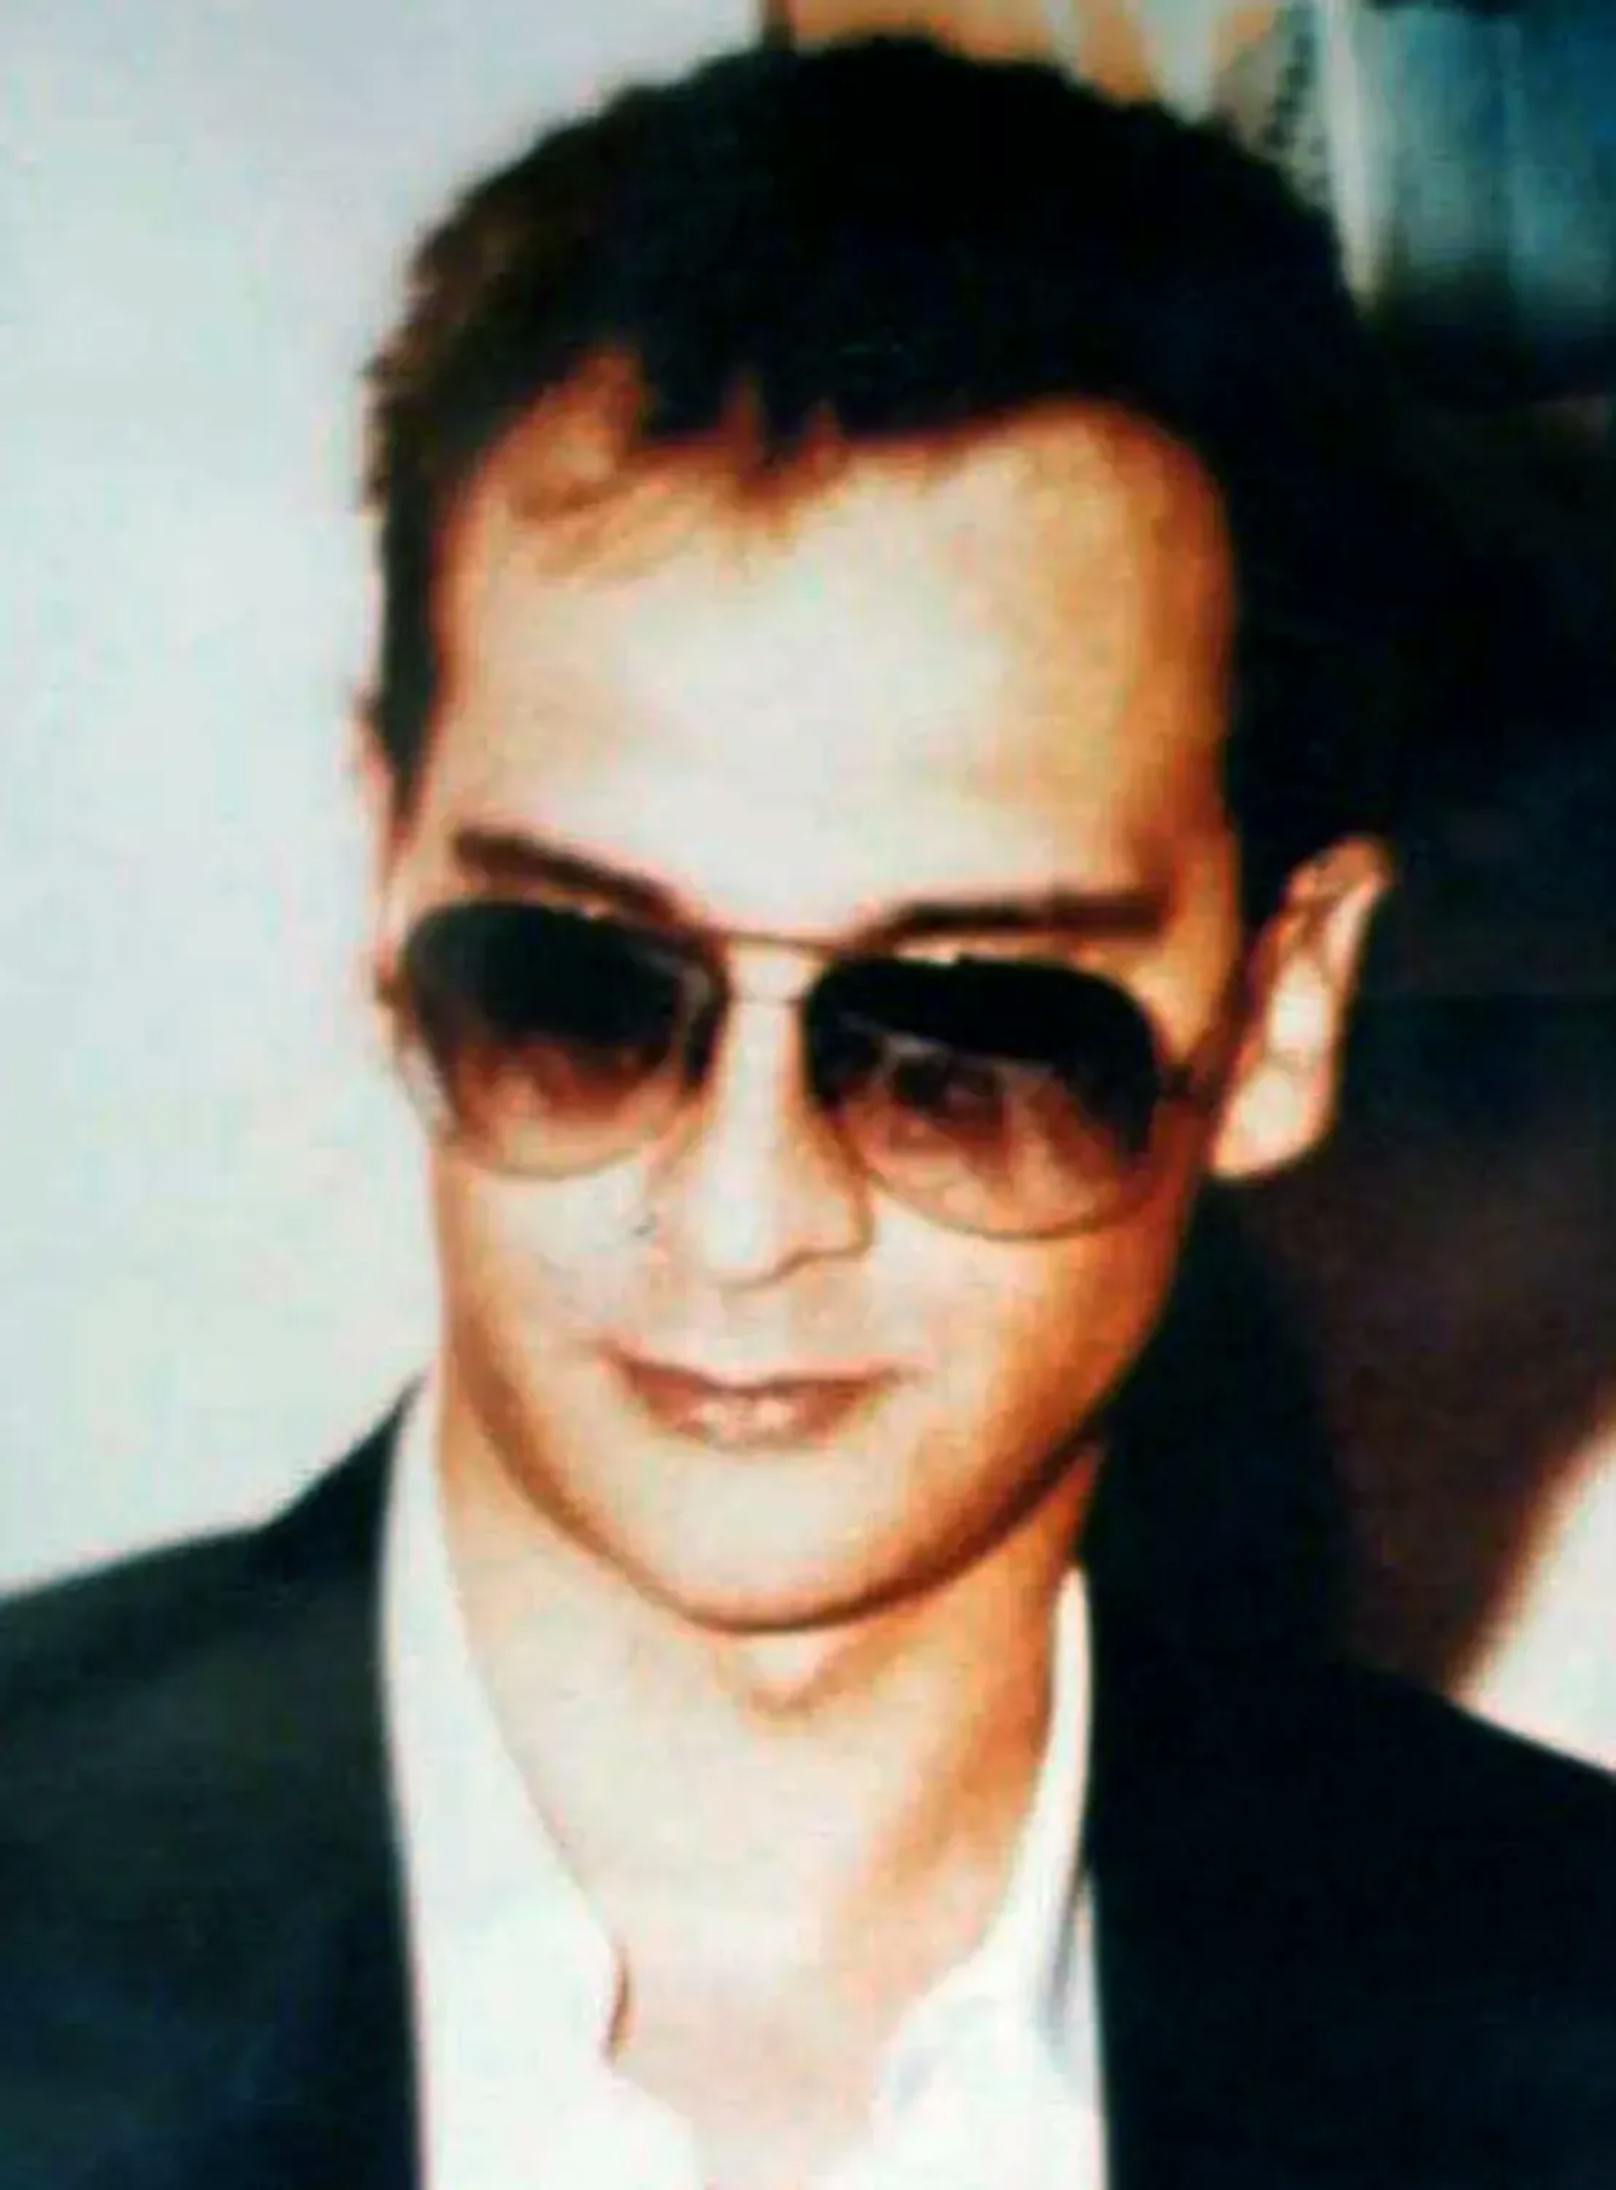 Matteo Messina Denaro während seiner aktiven Zeit in den 90er-Jahren – er soll dutzende Menschen ermordet haben.&nbsp;